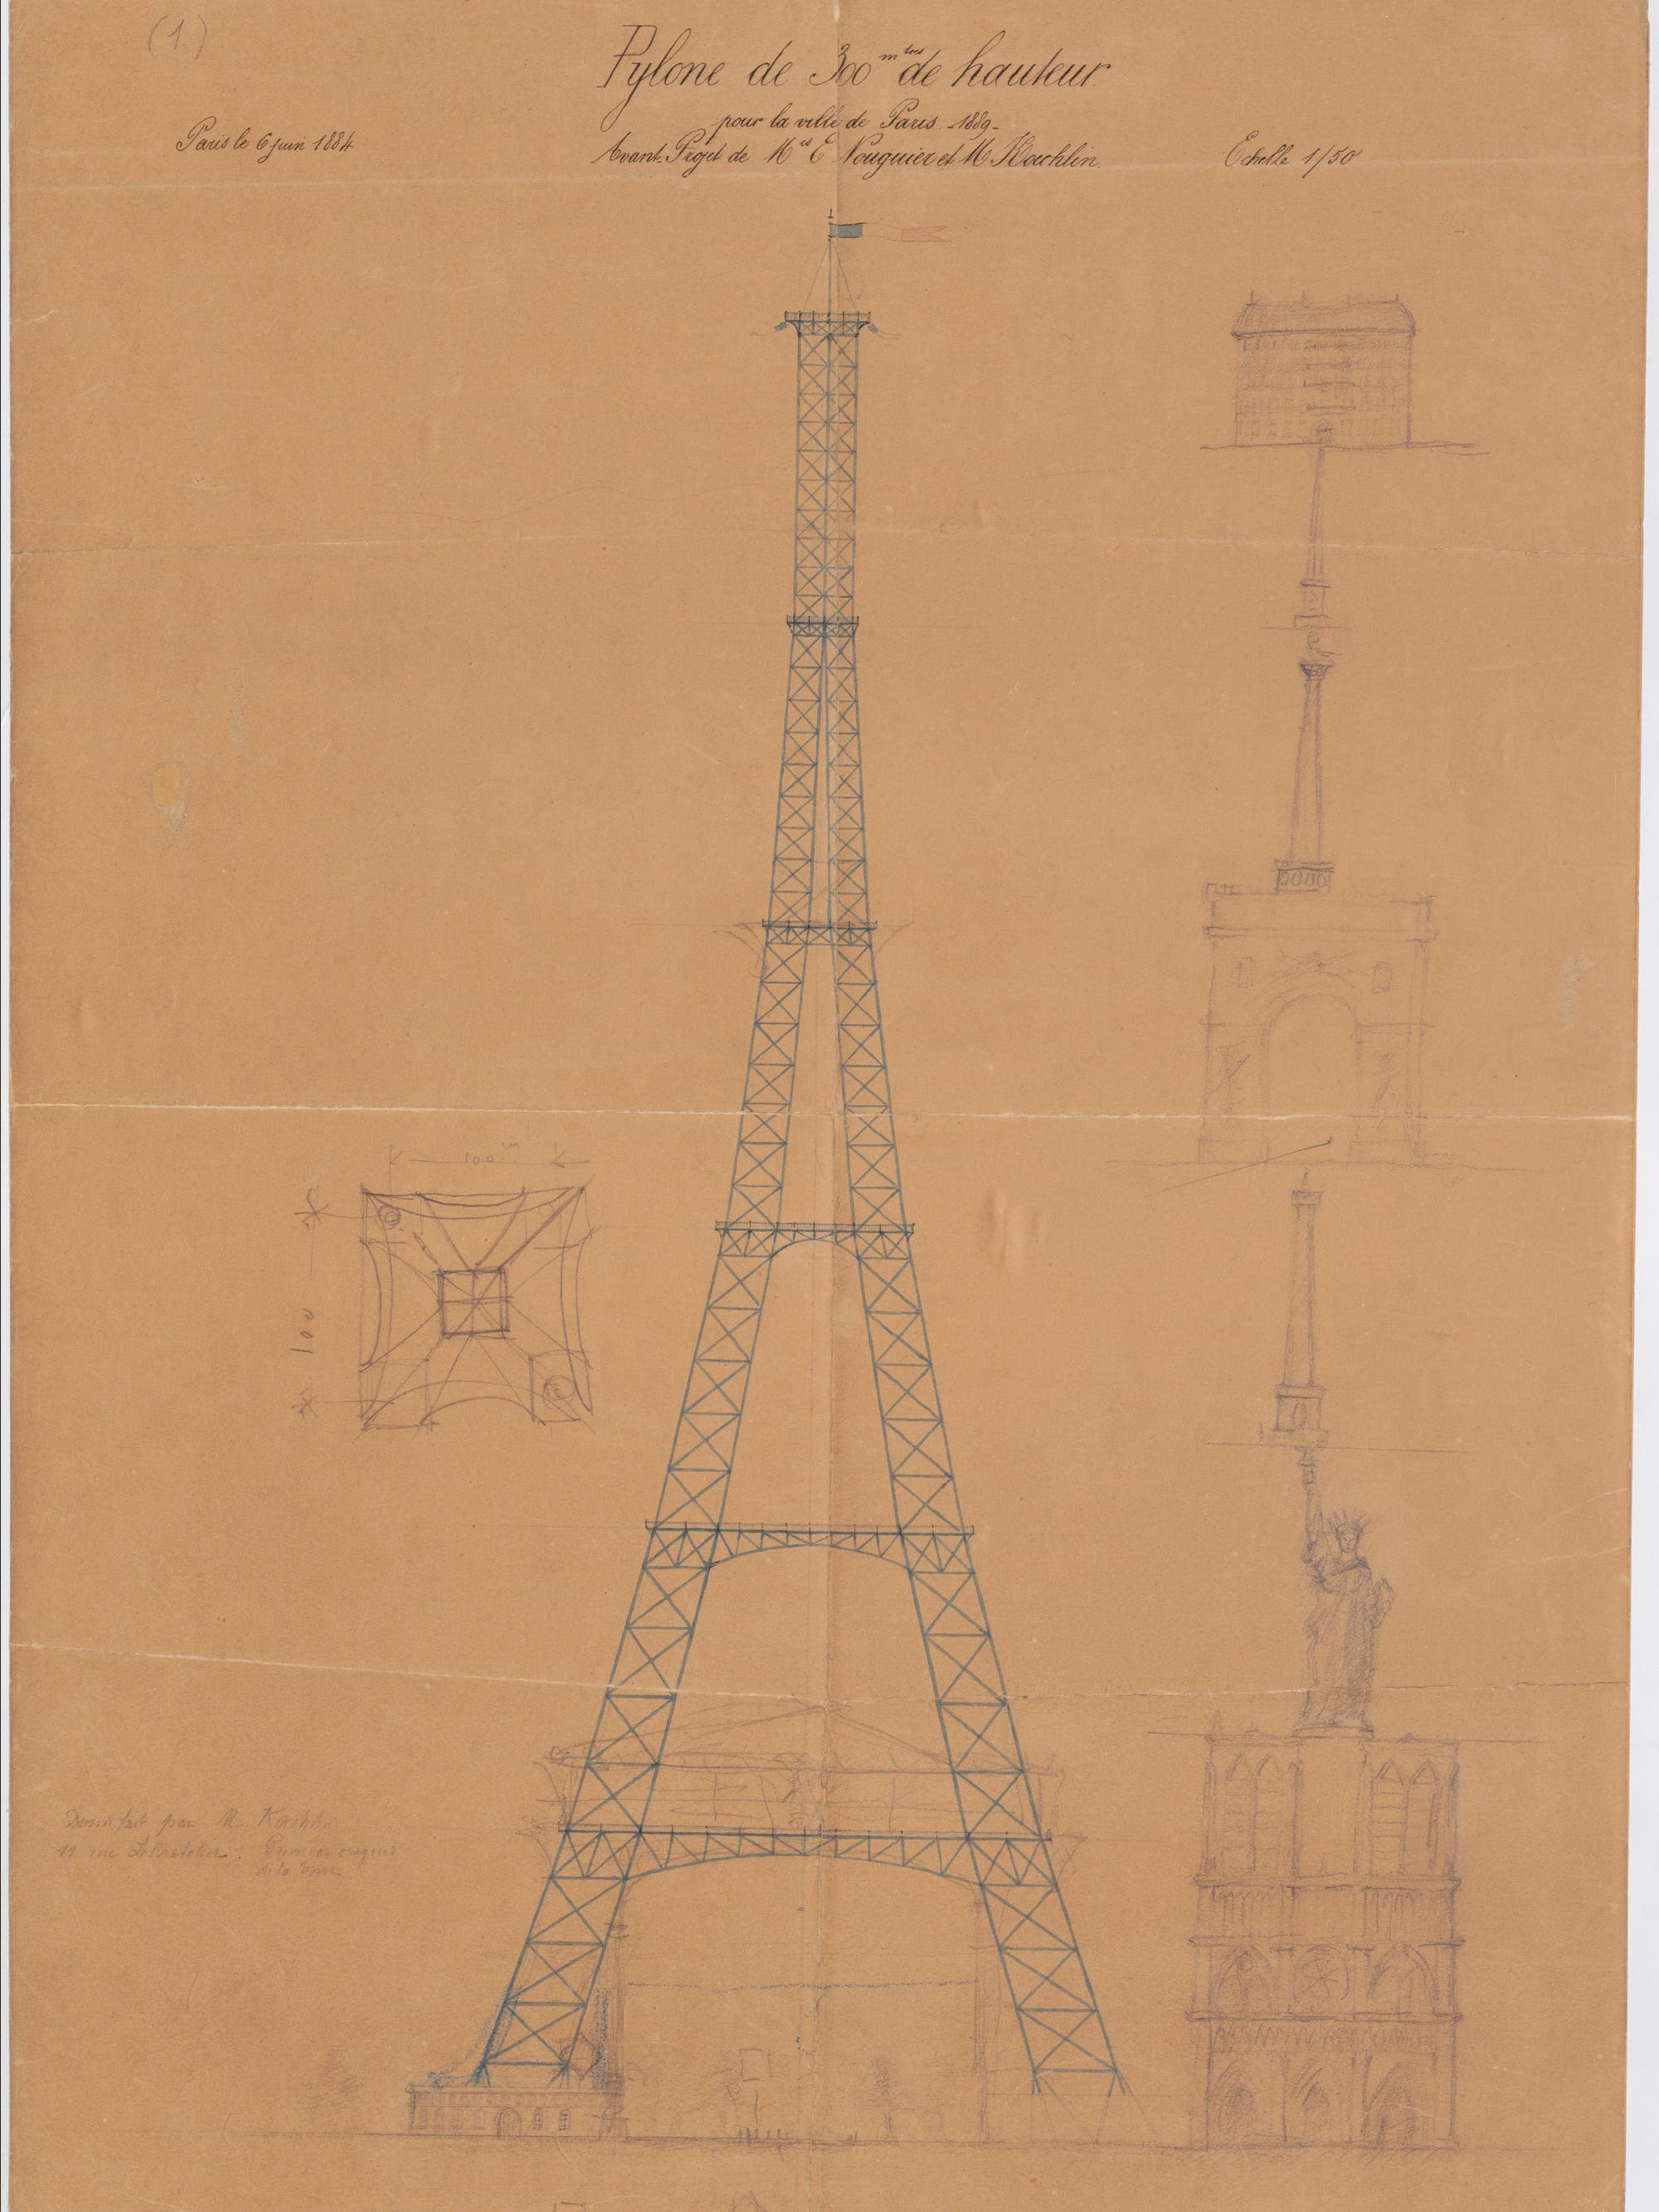 Entwurfzeichnung des Eiffelturms von Maurice Koechlin und Émile Nouguier.